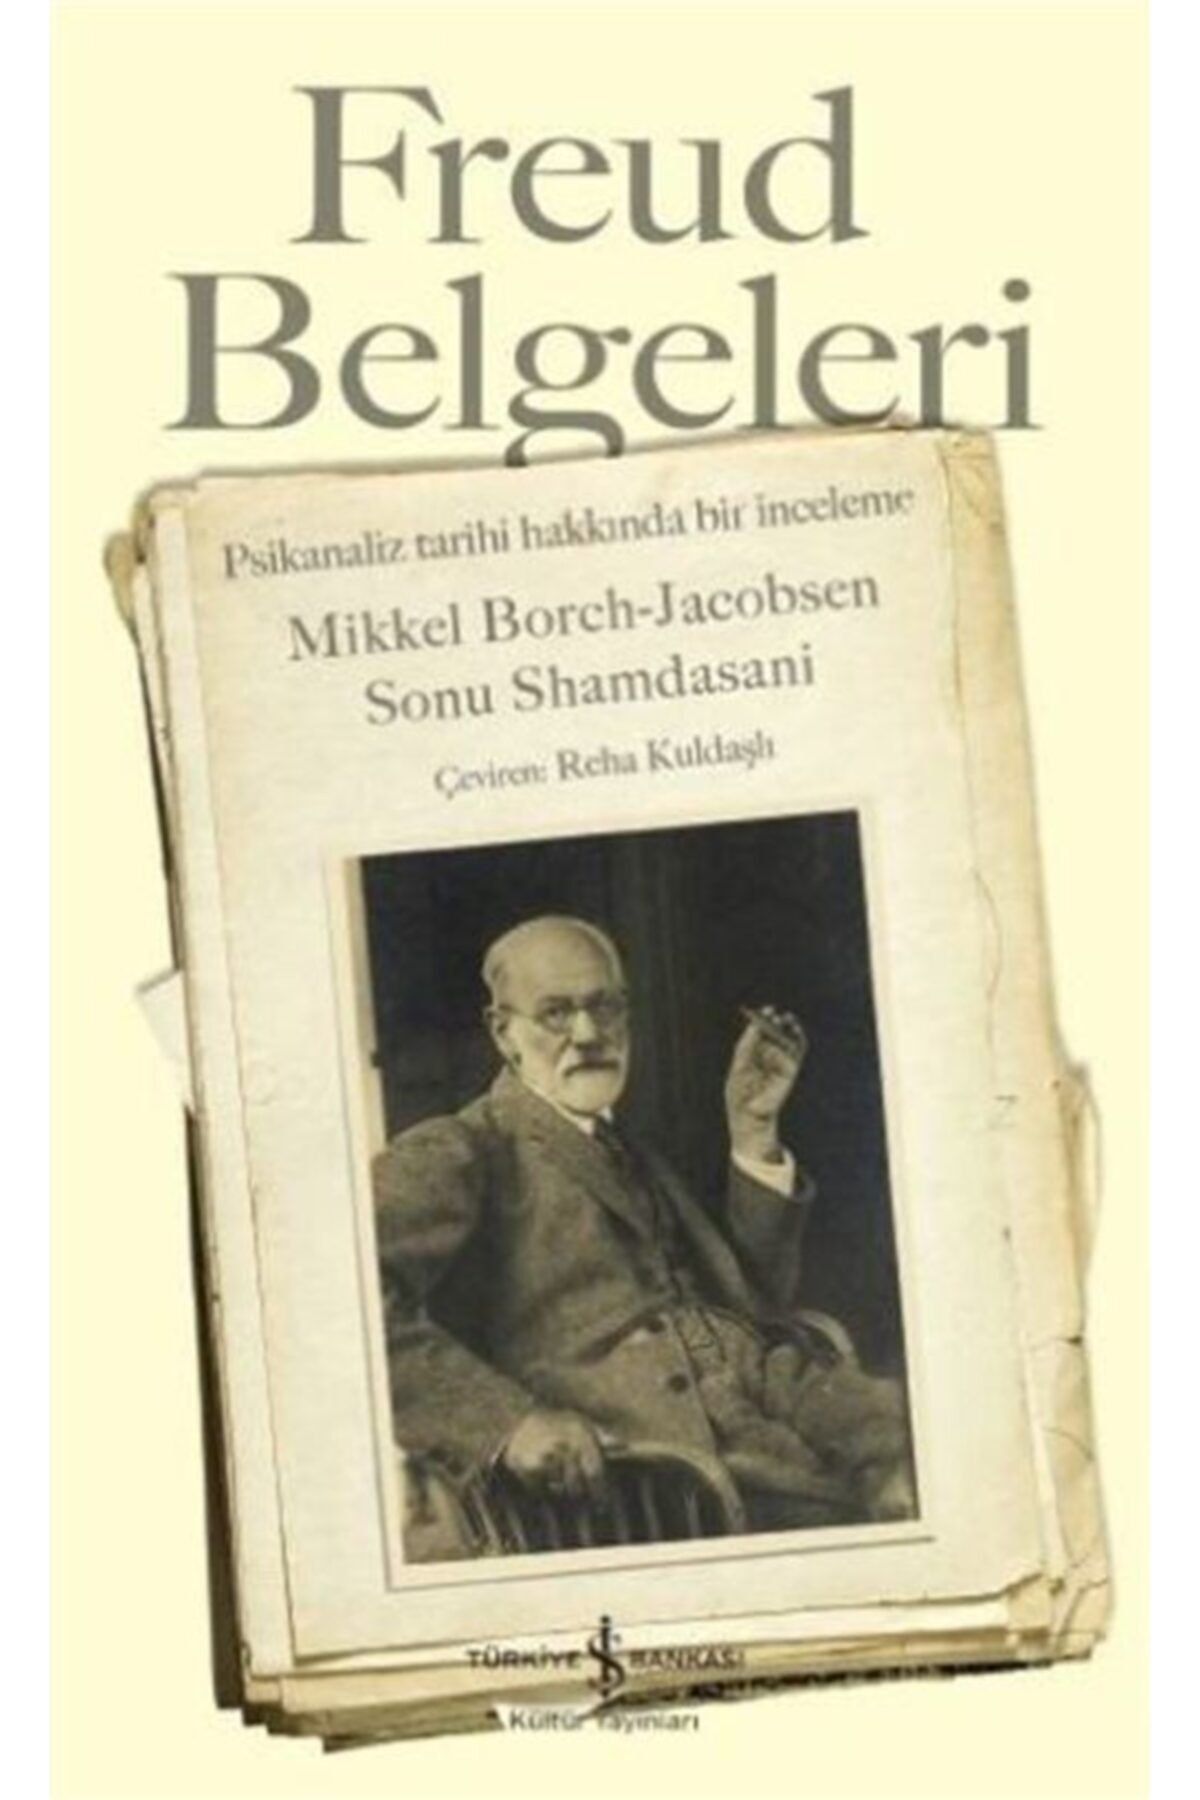 Türkiye İş Bankası Kültür Yayınları Freud Belgeleri & Psikanaliz Tarihi Hakkında Bir Inceleme